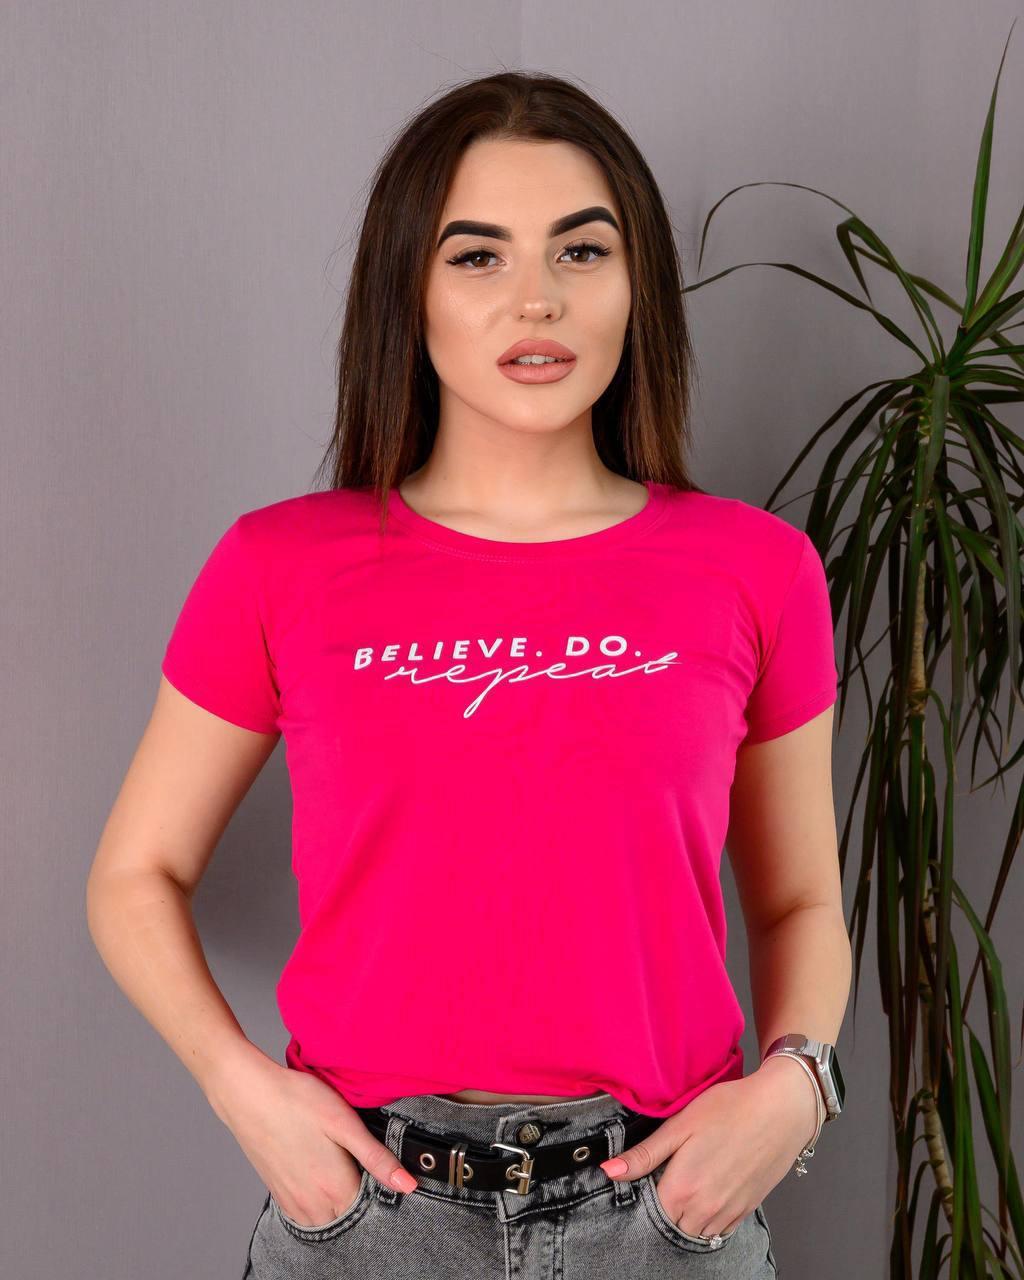 

Женская футболка с принтом в виде объемного текста "Belive.Do repeat" разных цветов Малиновый